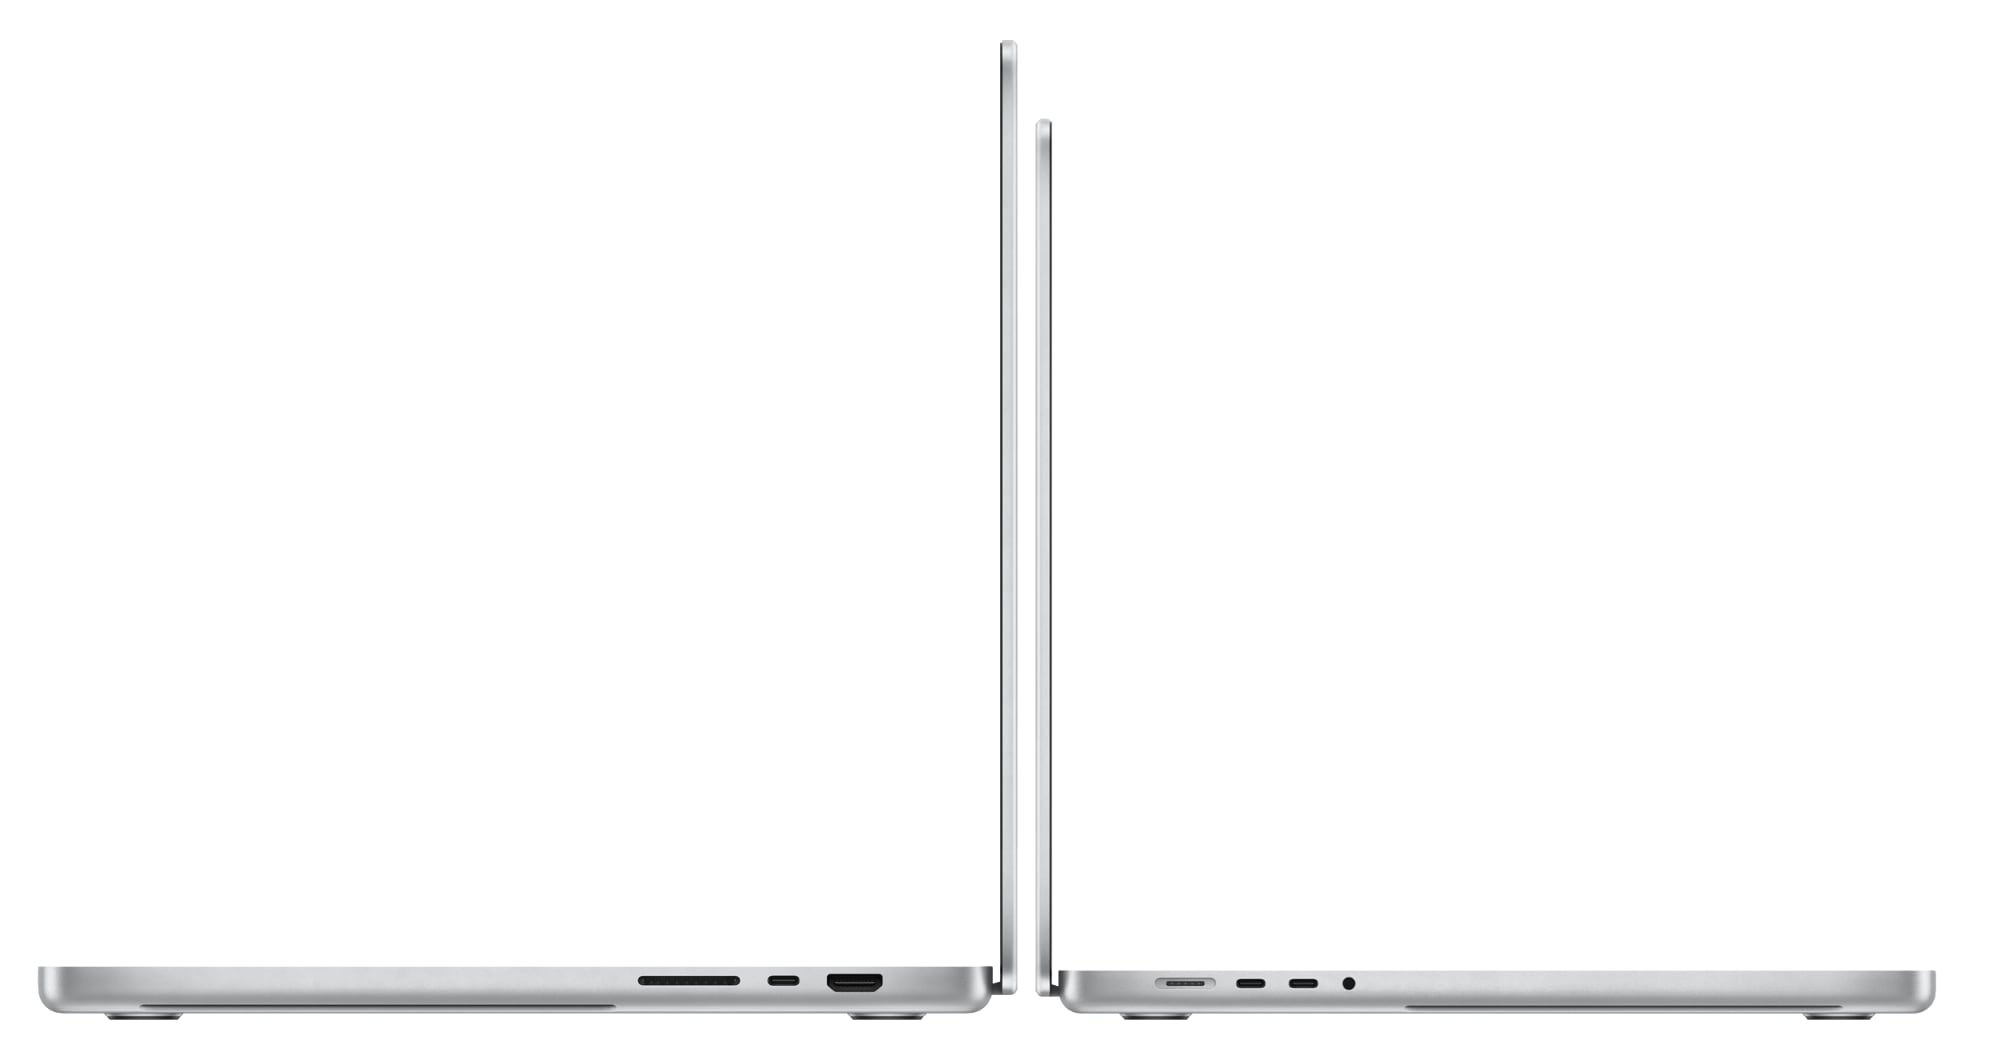 15 inch macbook pro - Die TOP Favoriten unter den 15 inch macbook pro